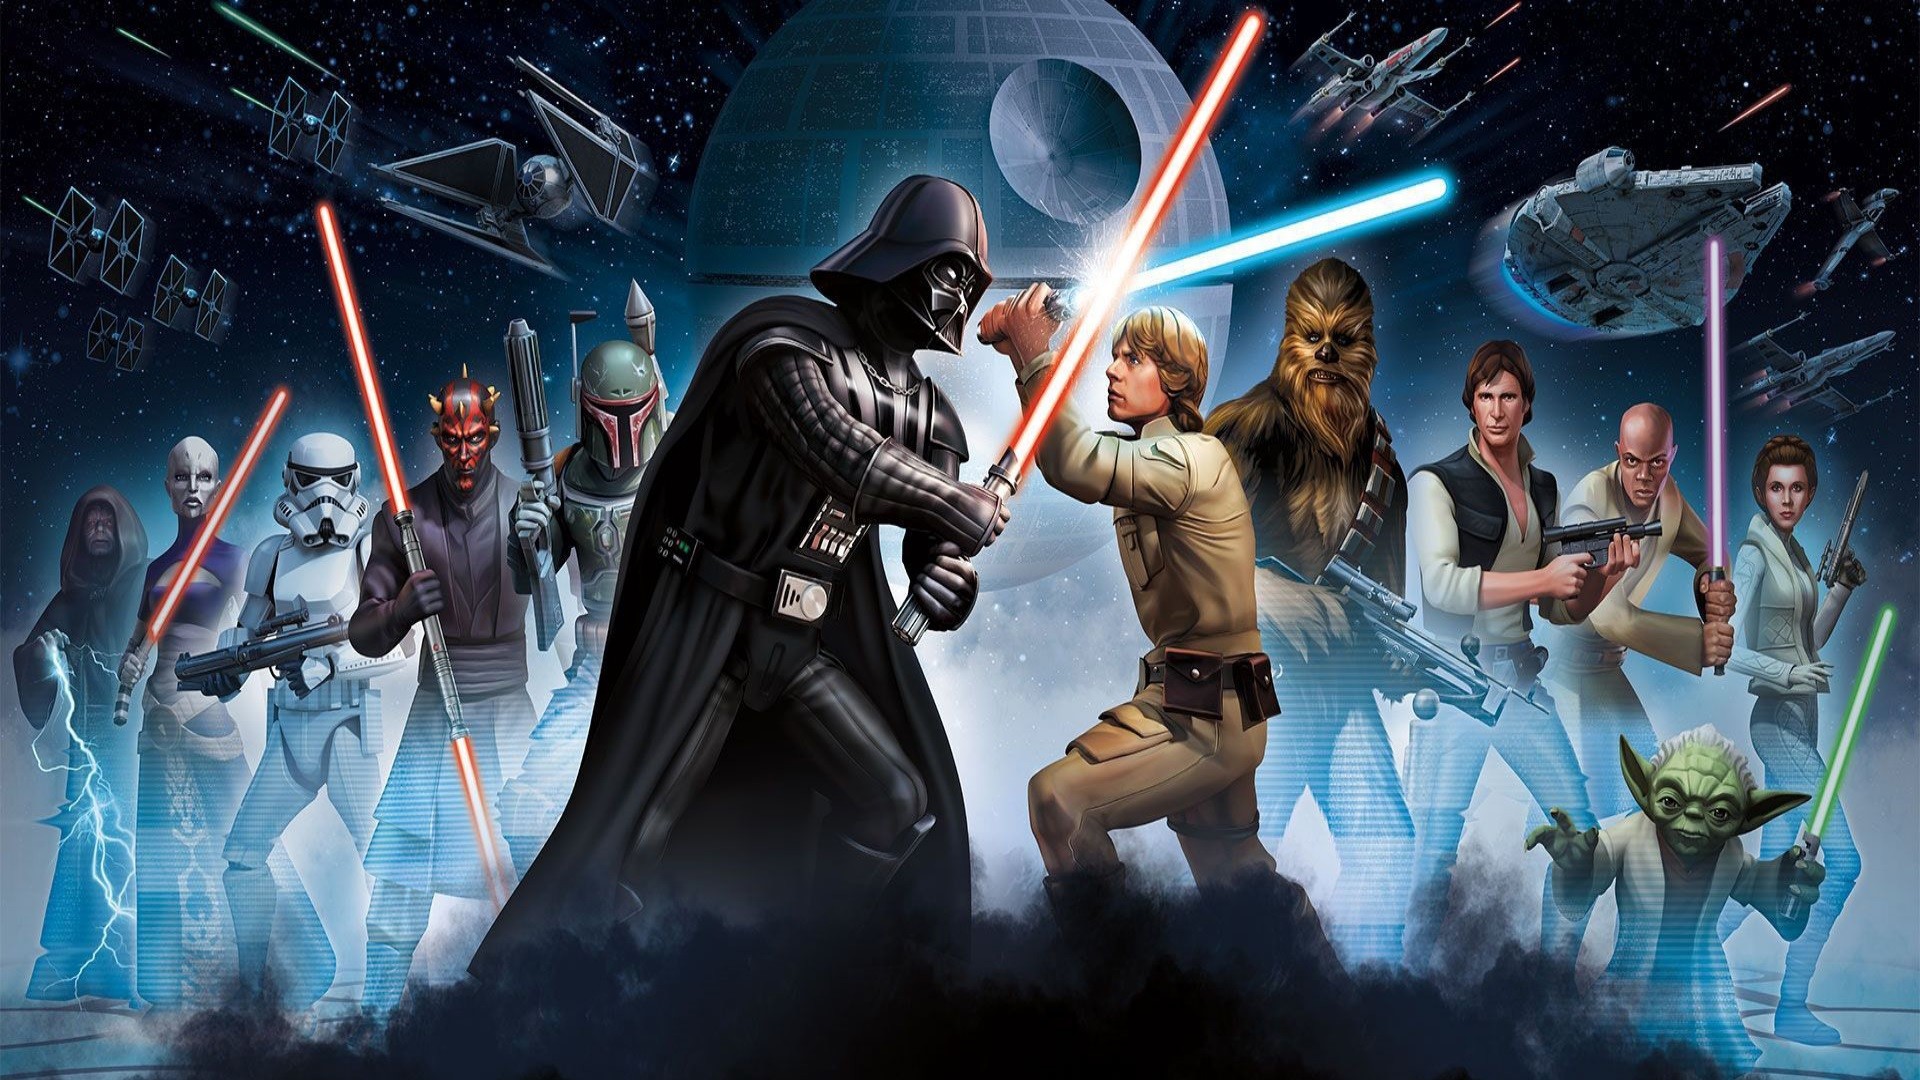 1920x1080 Movie - Star Wars Darth Vader Boba Fett Darth Maul Chewbacca Han Solo  Princess Leia Yoda